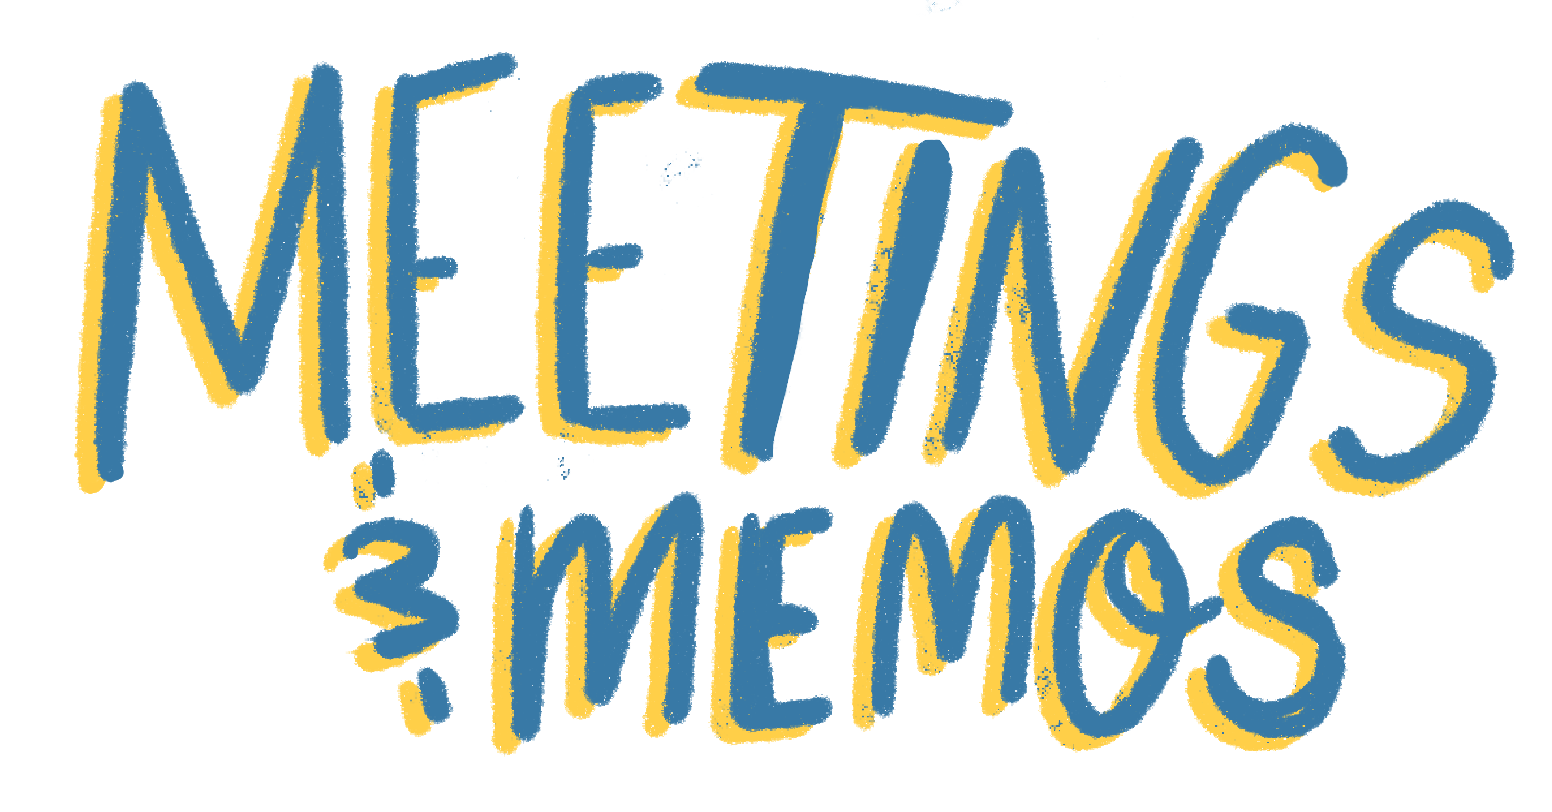 Meetings & Memos